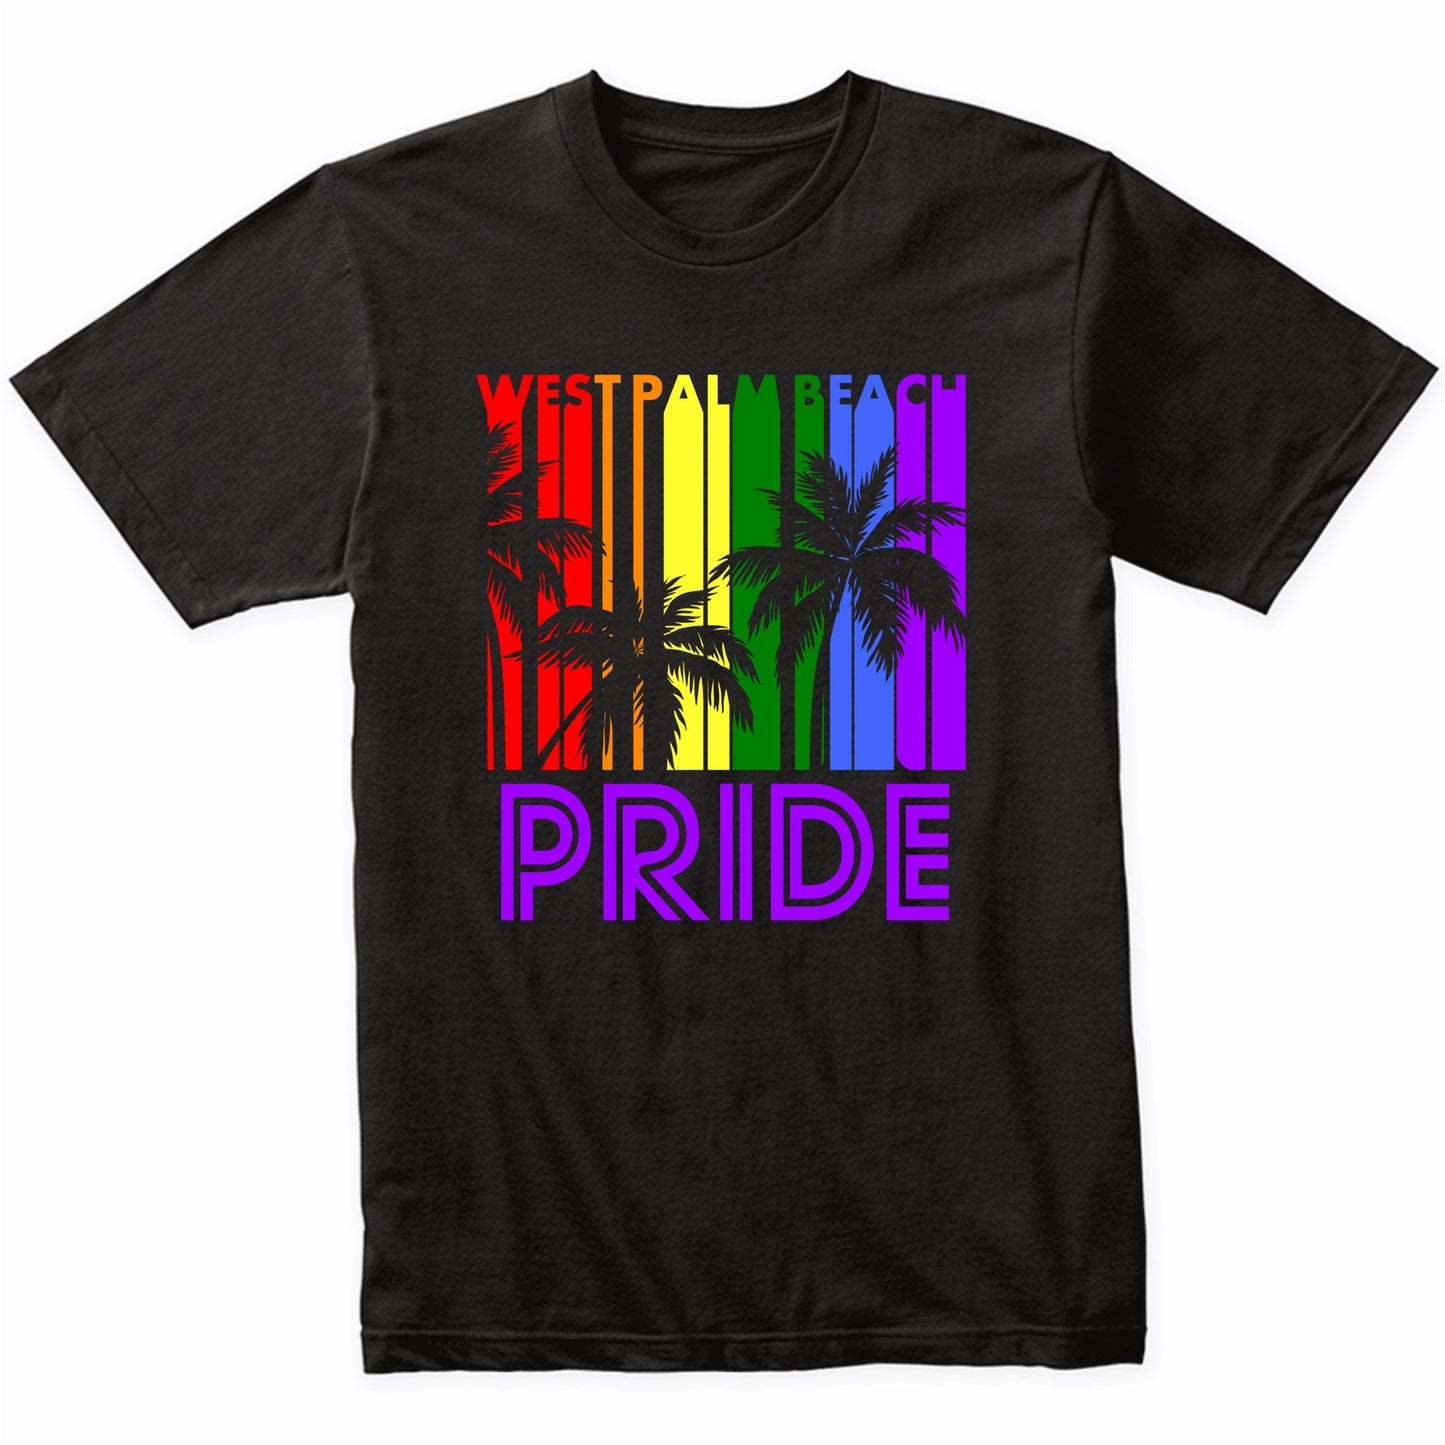 West Palm Beach Pride Gay Pride LGBTQ Rainbow Palm Trees T-Shirt